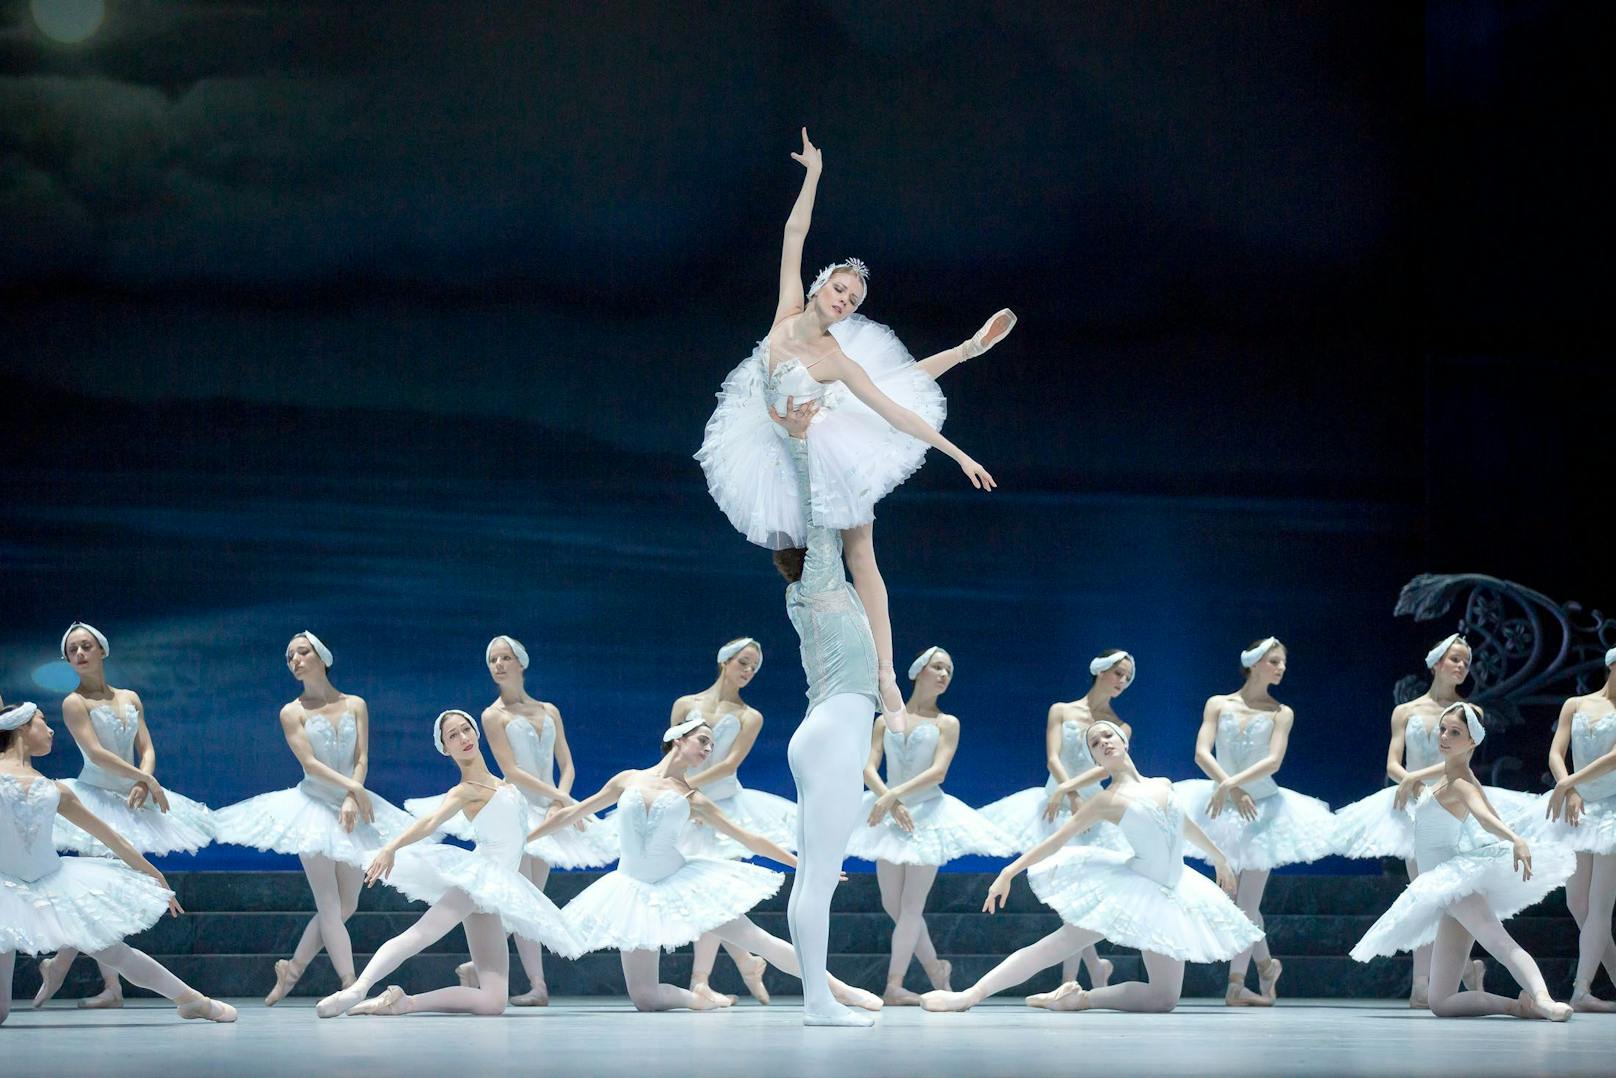 Ballett Schwanensee in der Wiener Staatsoper, mit Olga Esina als Odette/Odile und Vladimir Shishov als Prinz Siegfried.